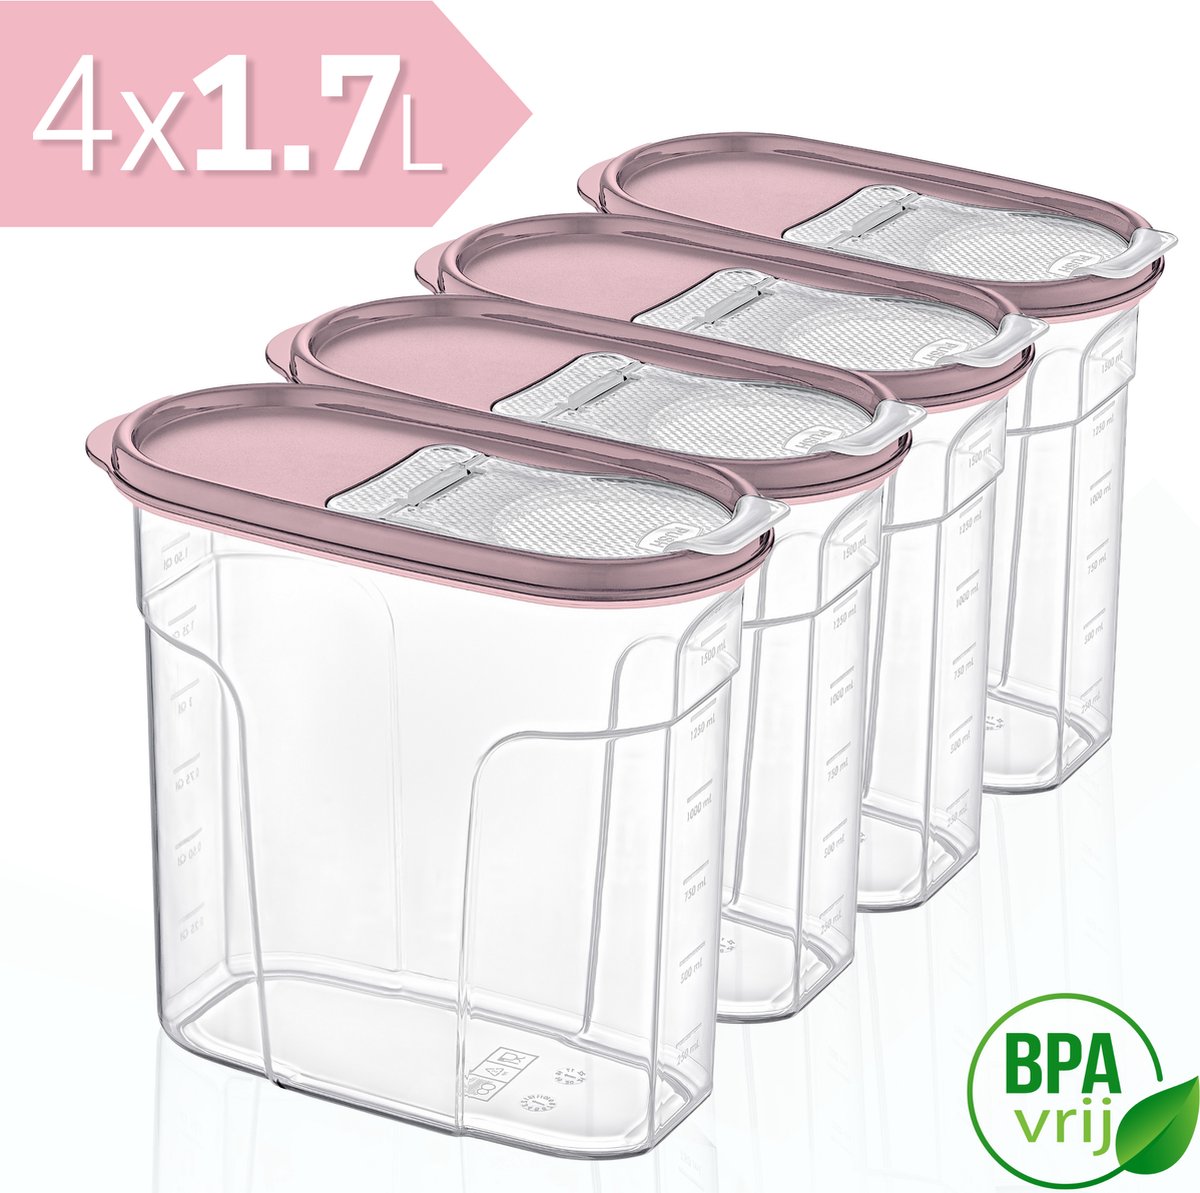 Voorraadpotten Set van 4 - 4x1.7L met rose deksel Voorraadbussen - Vershouddoos - 4 Stuks - BPA vrij - Kunststof